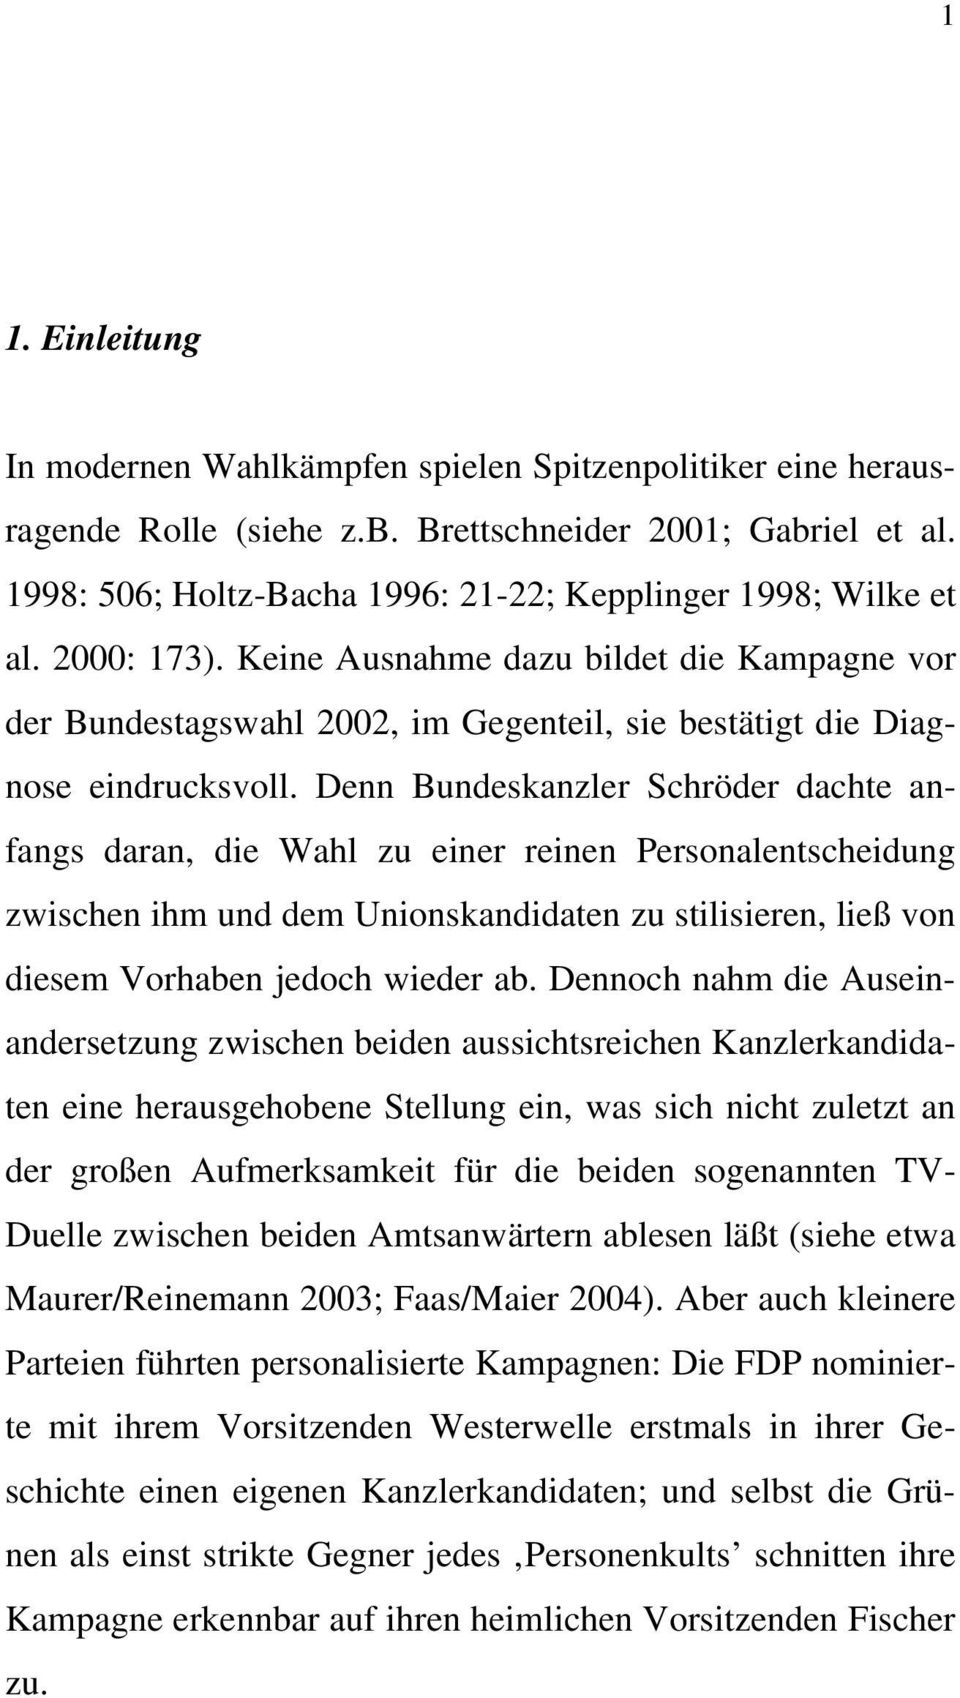 Keine Ausnahme dazu bildet die Kampagne vor der Bundestagswahl 2002, im Gegenteil, sie bestätigt die Diagnose eindrucksvoll.